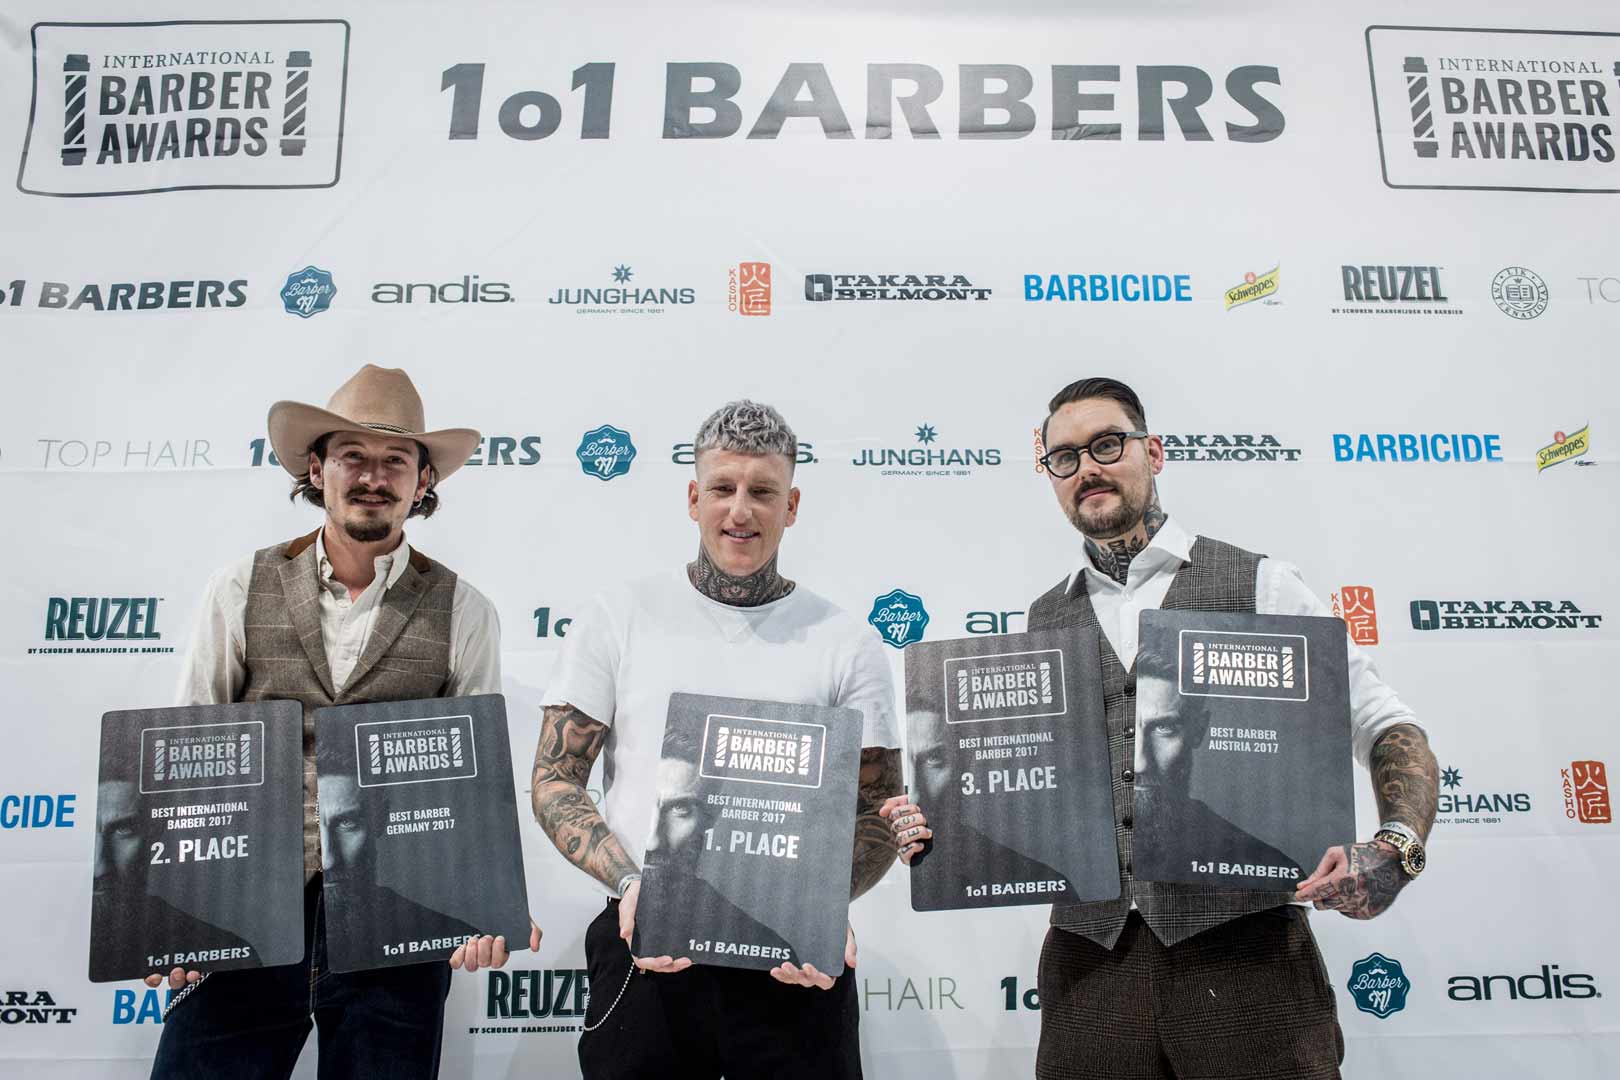 hairGAMES-International-Barber-Awards-People-Co-die-ersten-Fotos-von-der-Haare-2017-2126-35